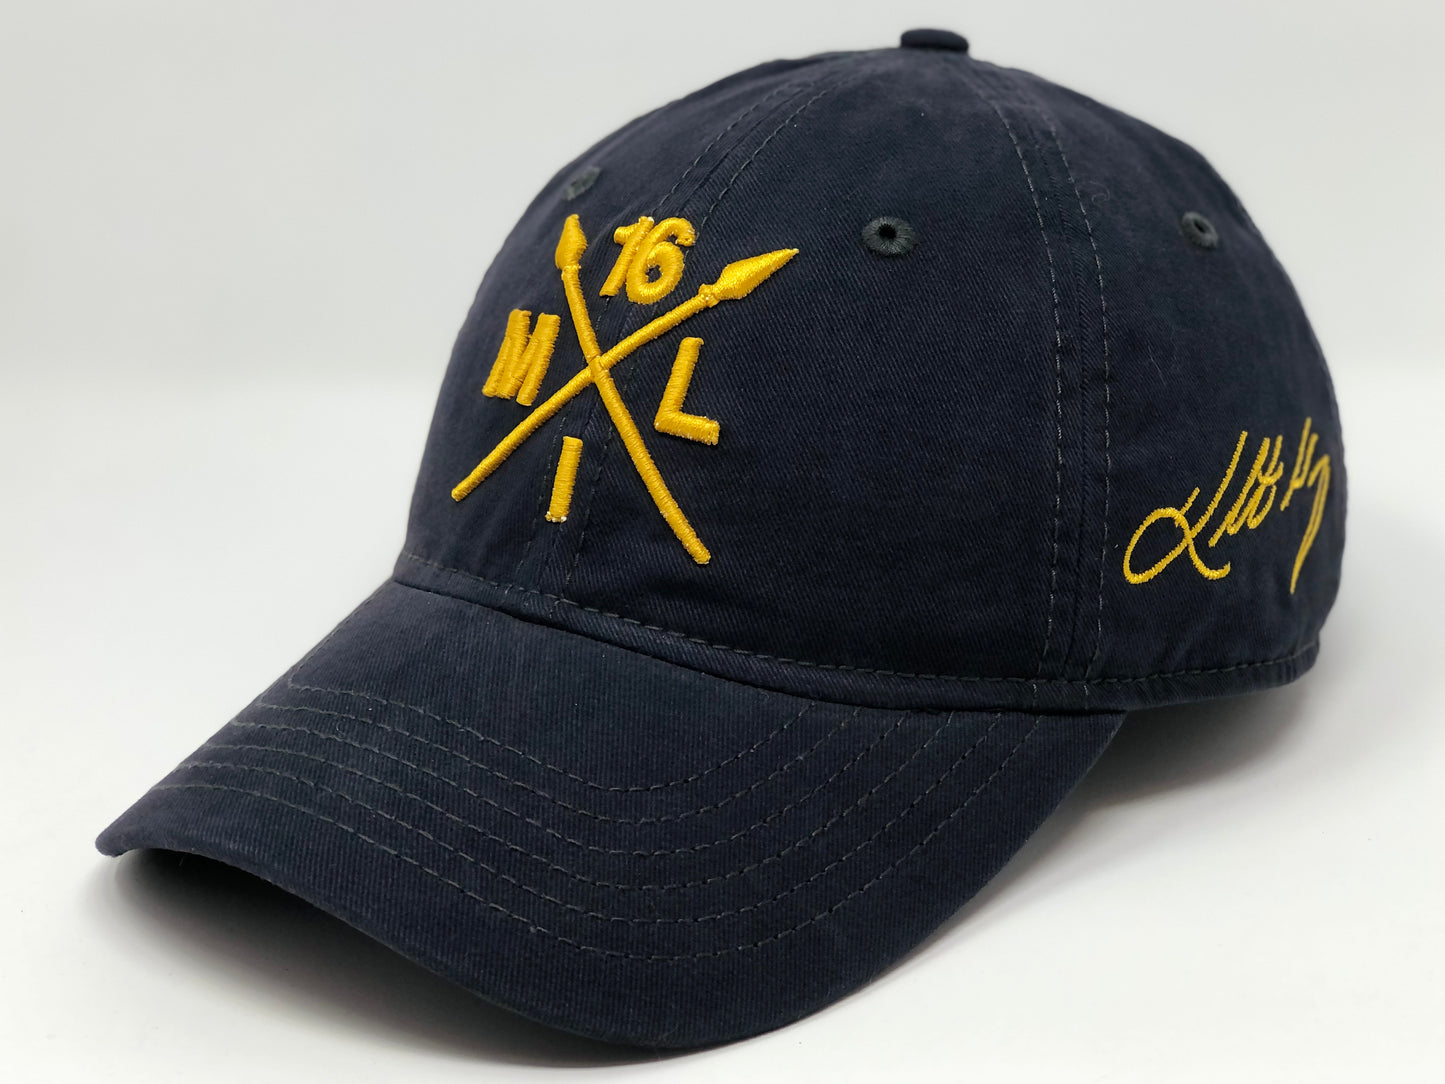 Kolten Wong 16 Compass Cap - Navy Dad Hat